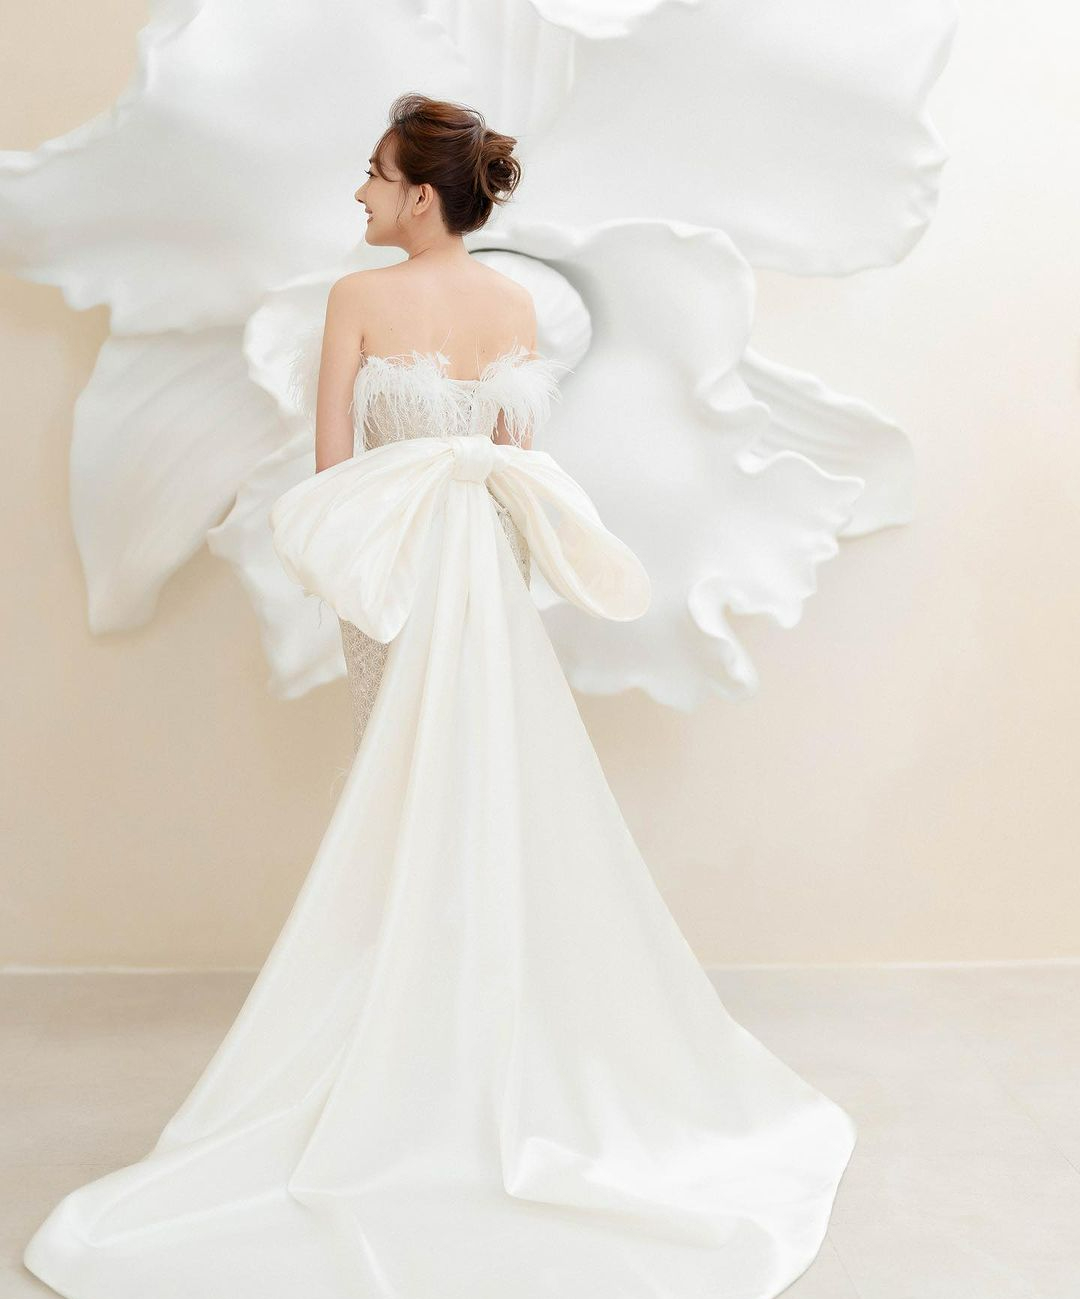 Những mẫu váy cưới chữ A đẹp nhất tại Swan Bridal